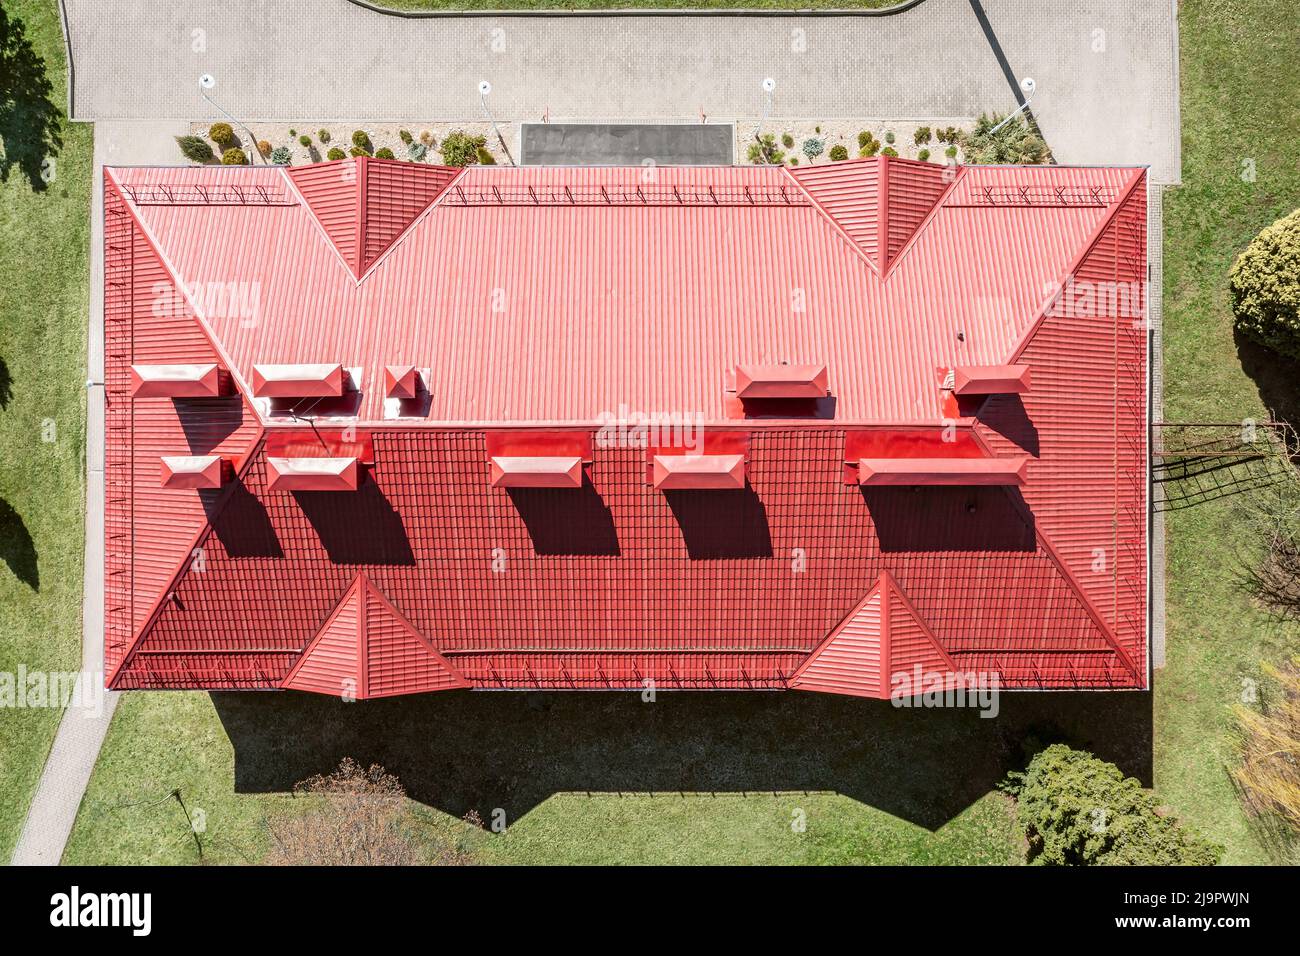 vista aérea de la casa con techo inclinado de metal corrugado rojo, chimeneas y tubos de ventilación Foto de stock